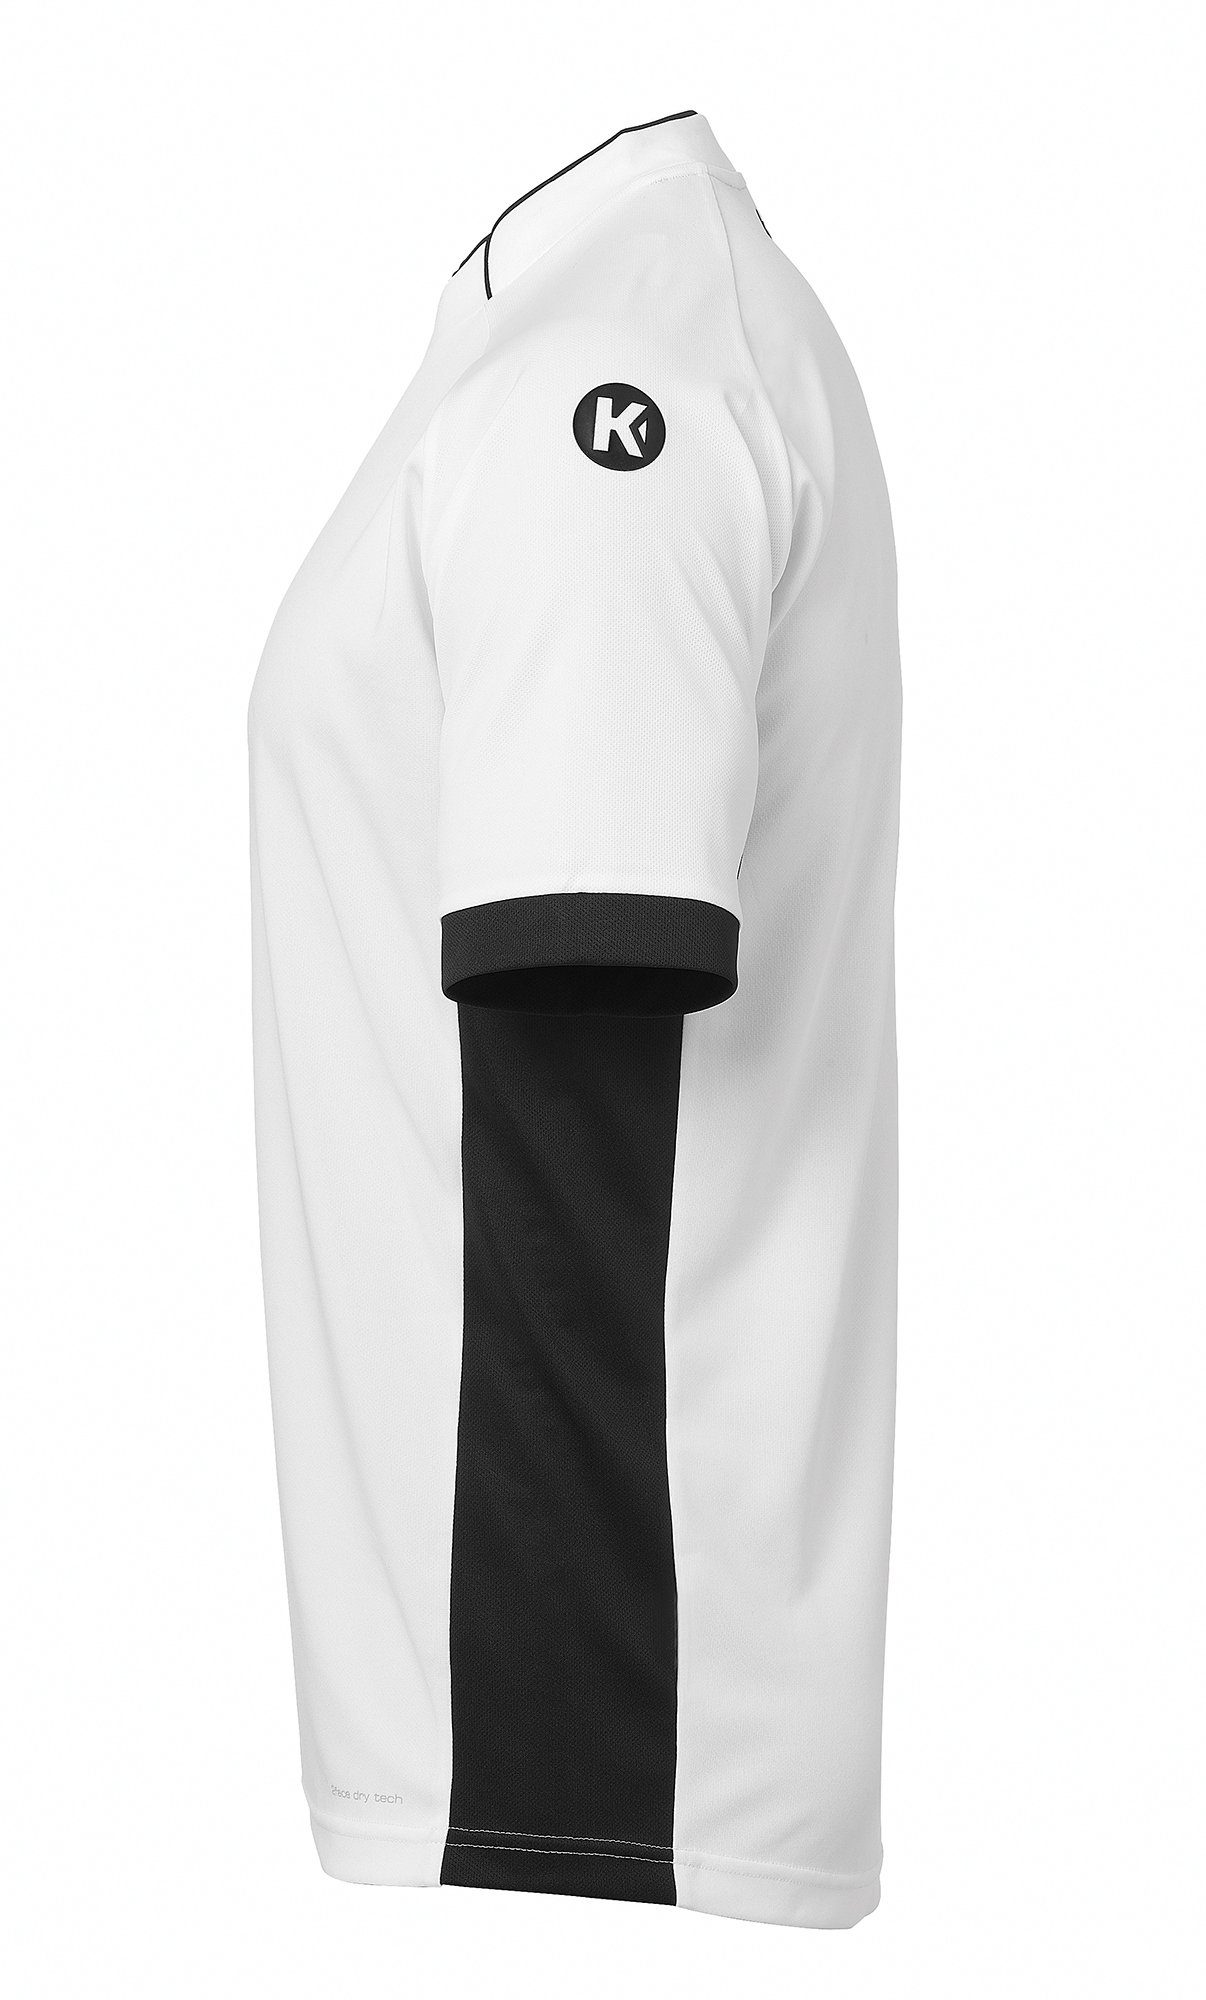 schnelltrocknend Kempa Shirt PRIME weiß/schwarz TRIKOT Kempa Trainingsshirt